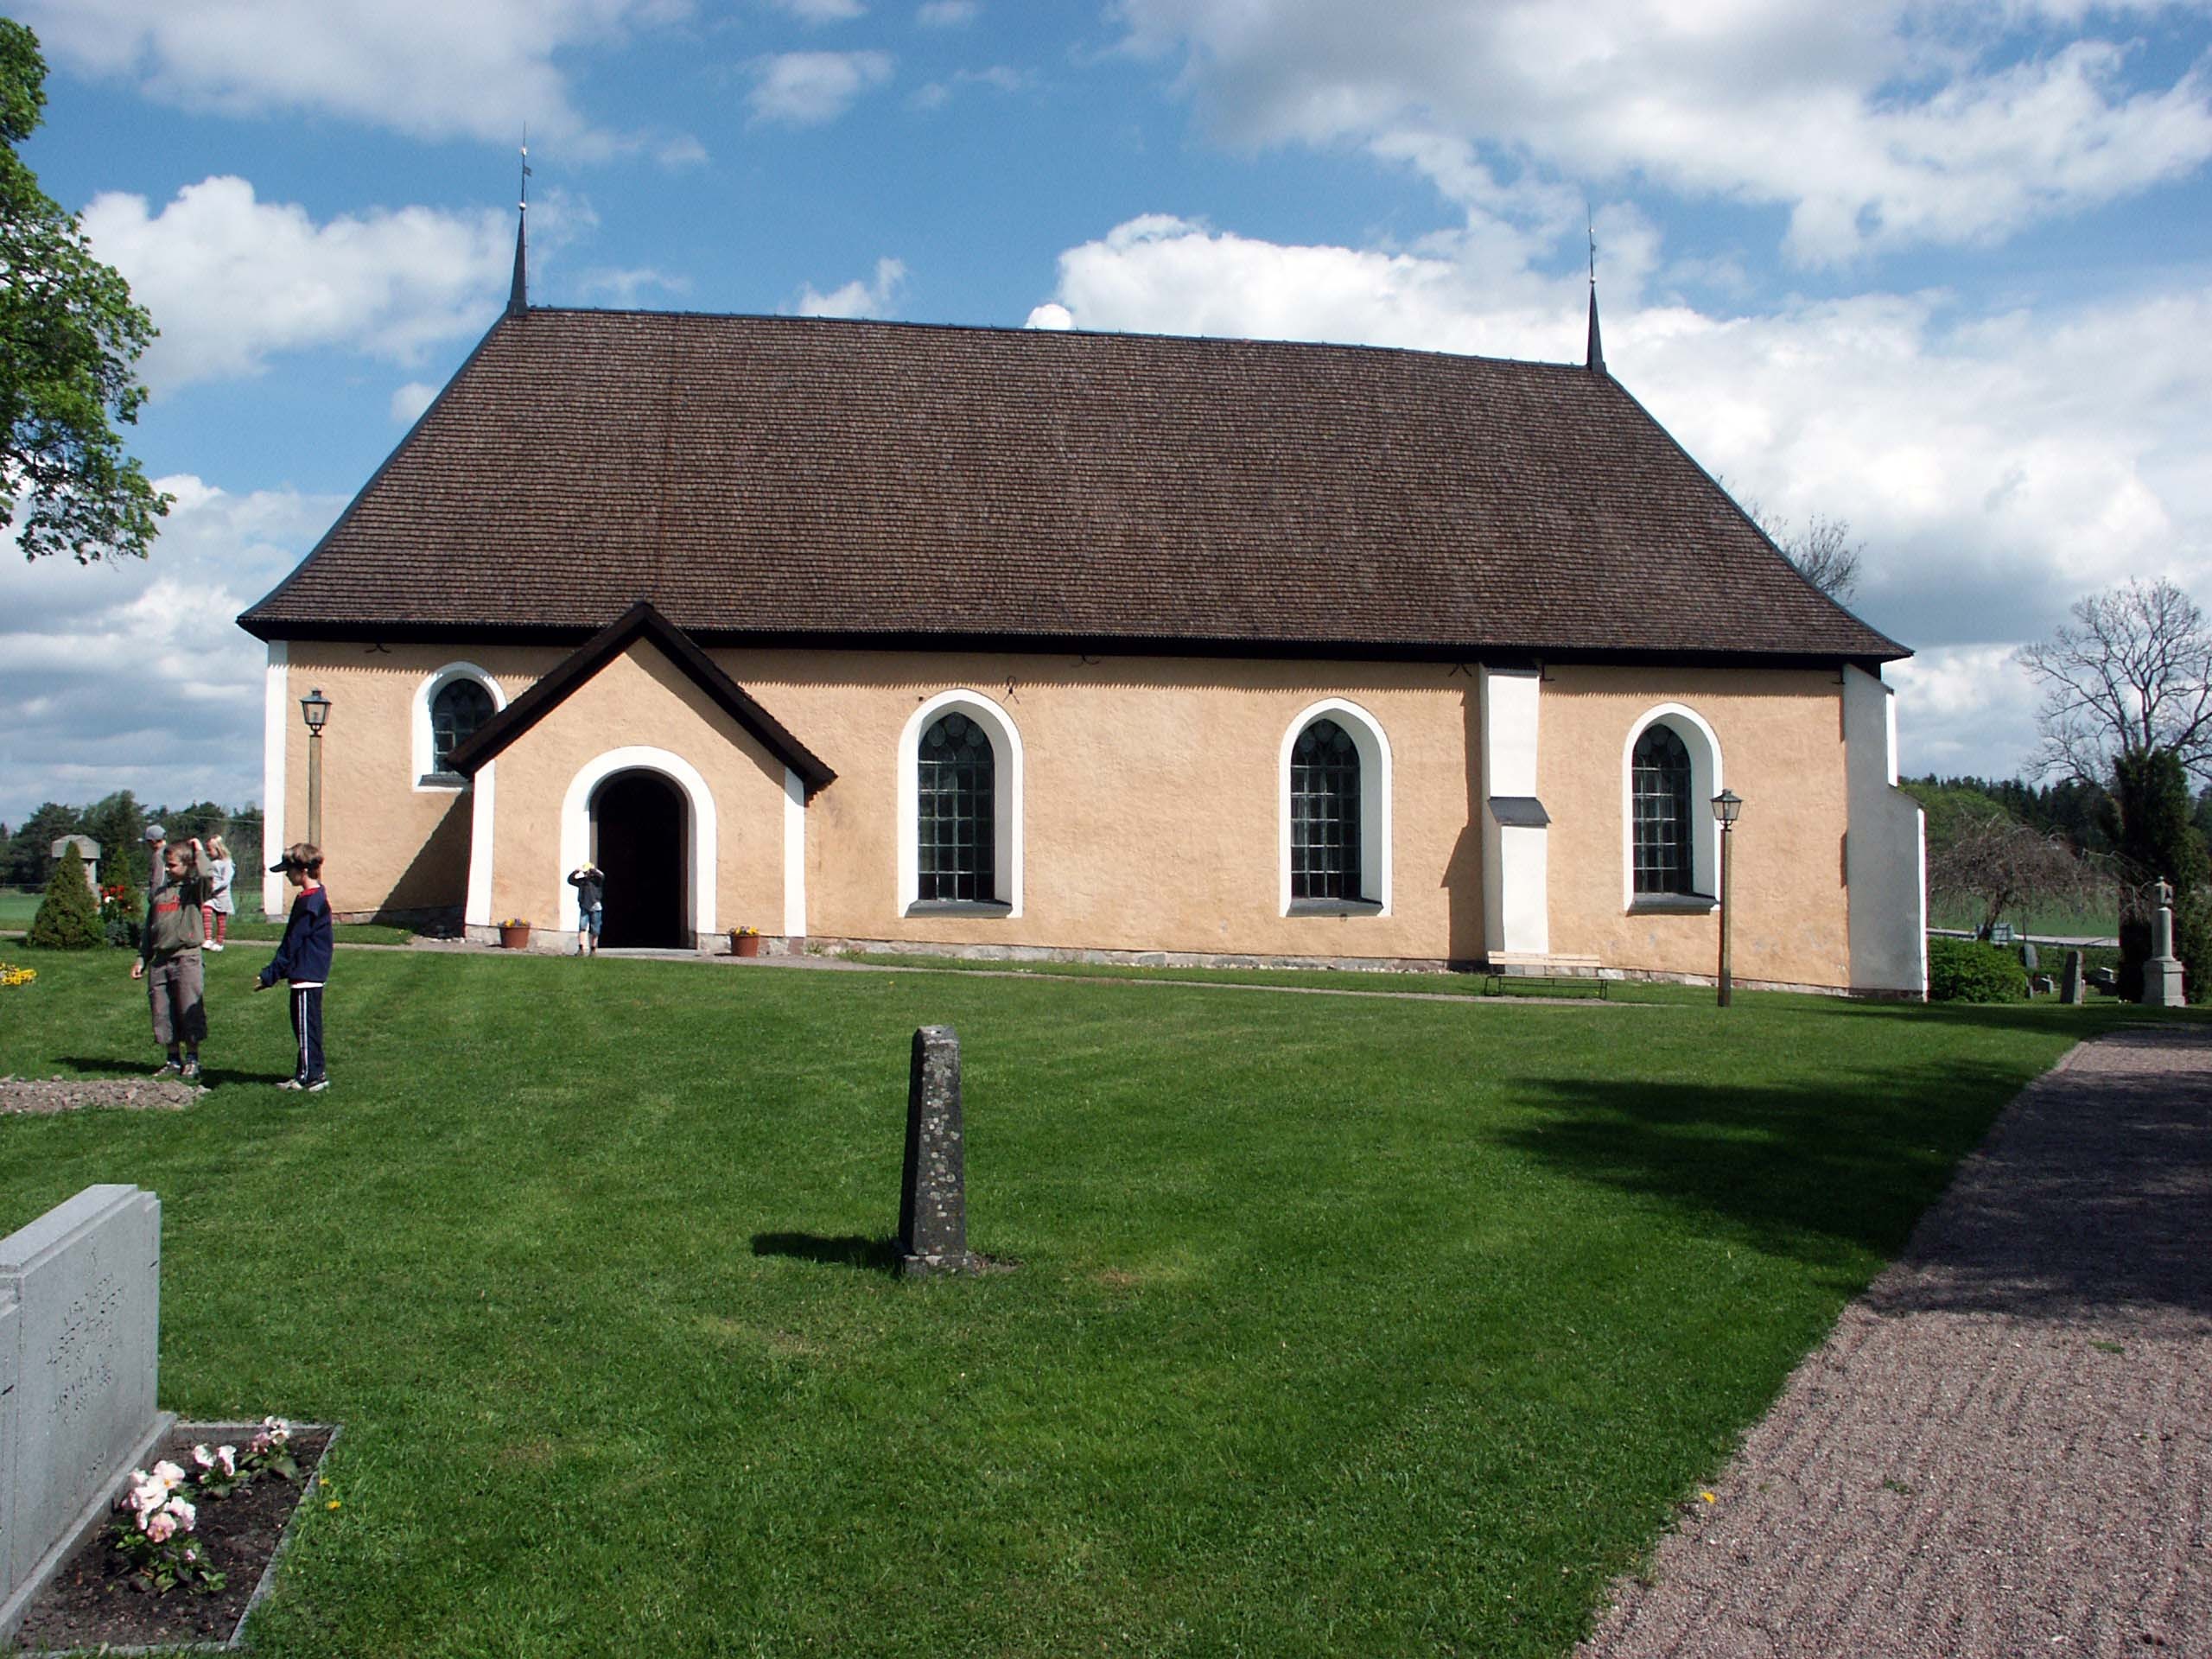 Kyrkan fick sin nuvarande karaktär vid en stor ombyggnad på 1660-talet då det medeltida långhuset förlängdes åt öster med ett nytt kor. Taket byggdes också om vid denna tid. 